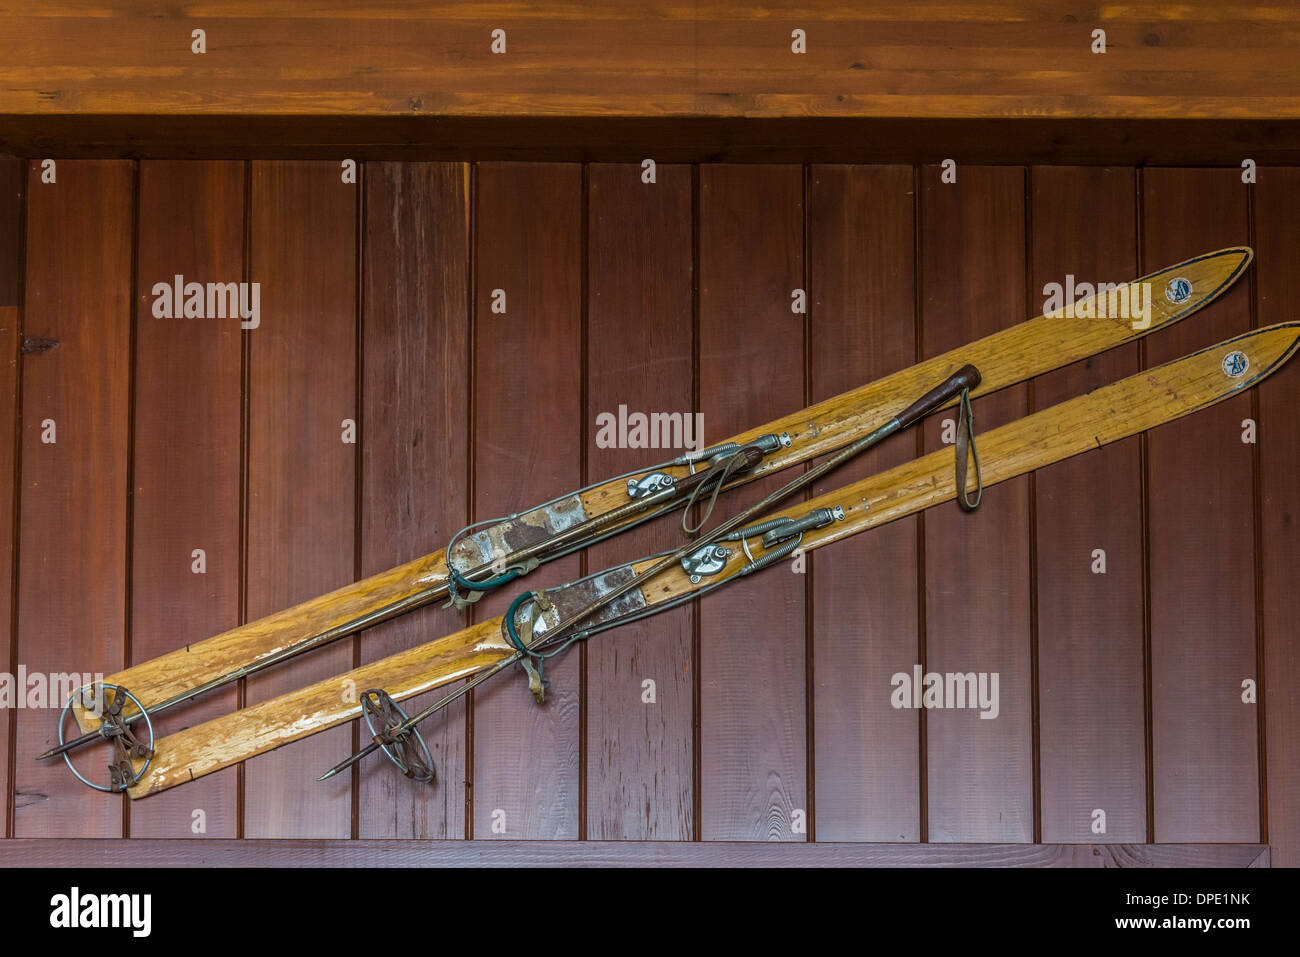 Une paire de skis en bois de style ancien accroché au mur Photo Stock -  Alamy